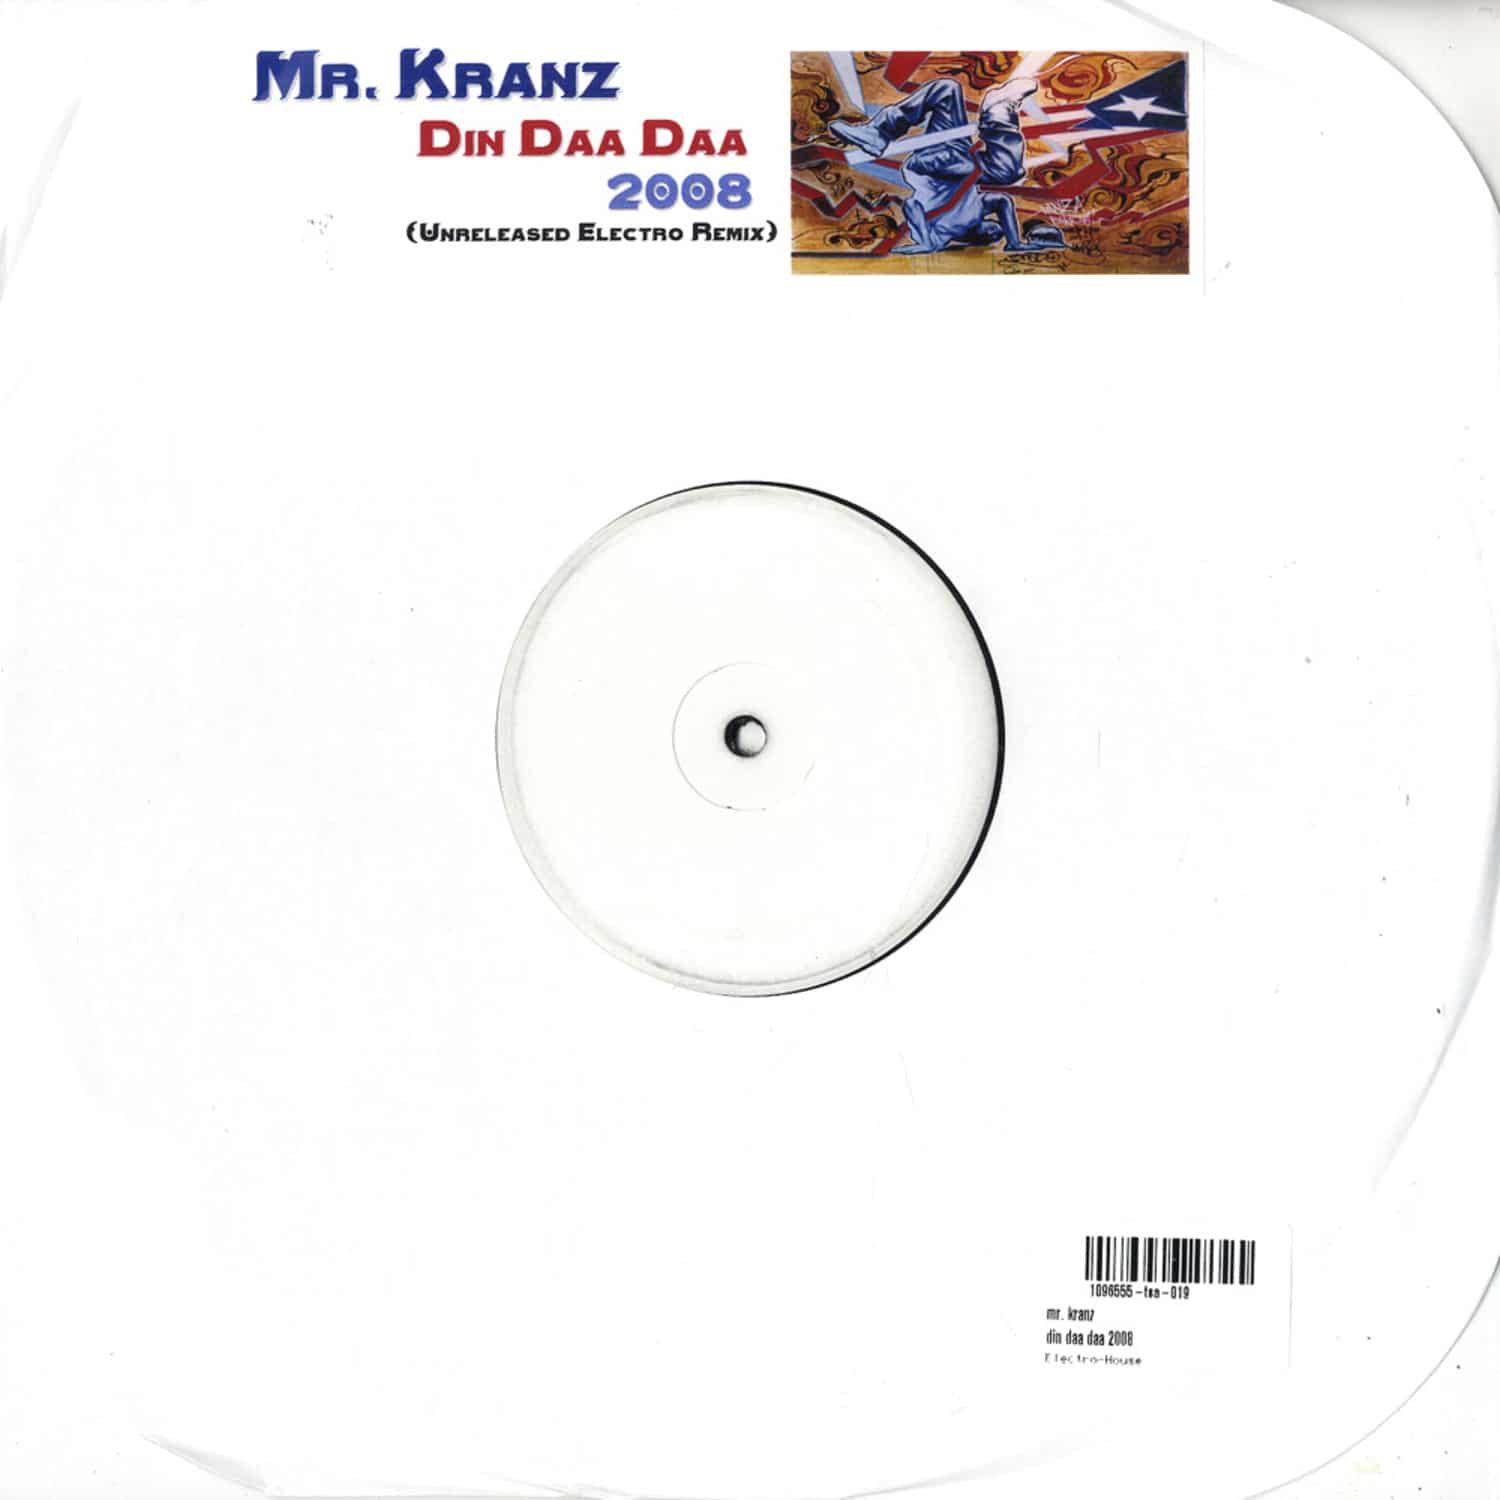 Mr. Kranz - DIN DAA DAA 2008